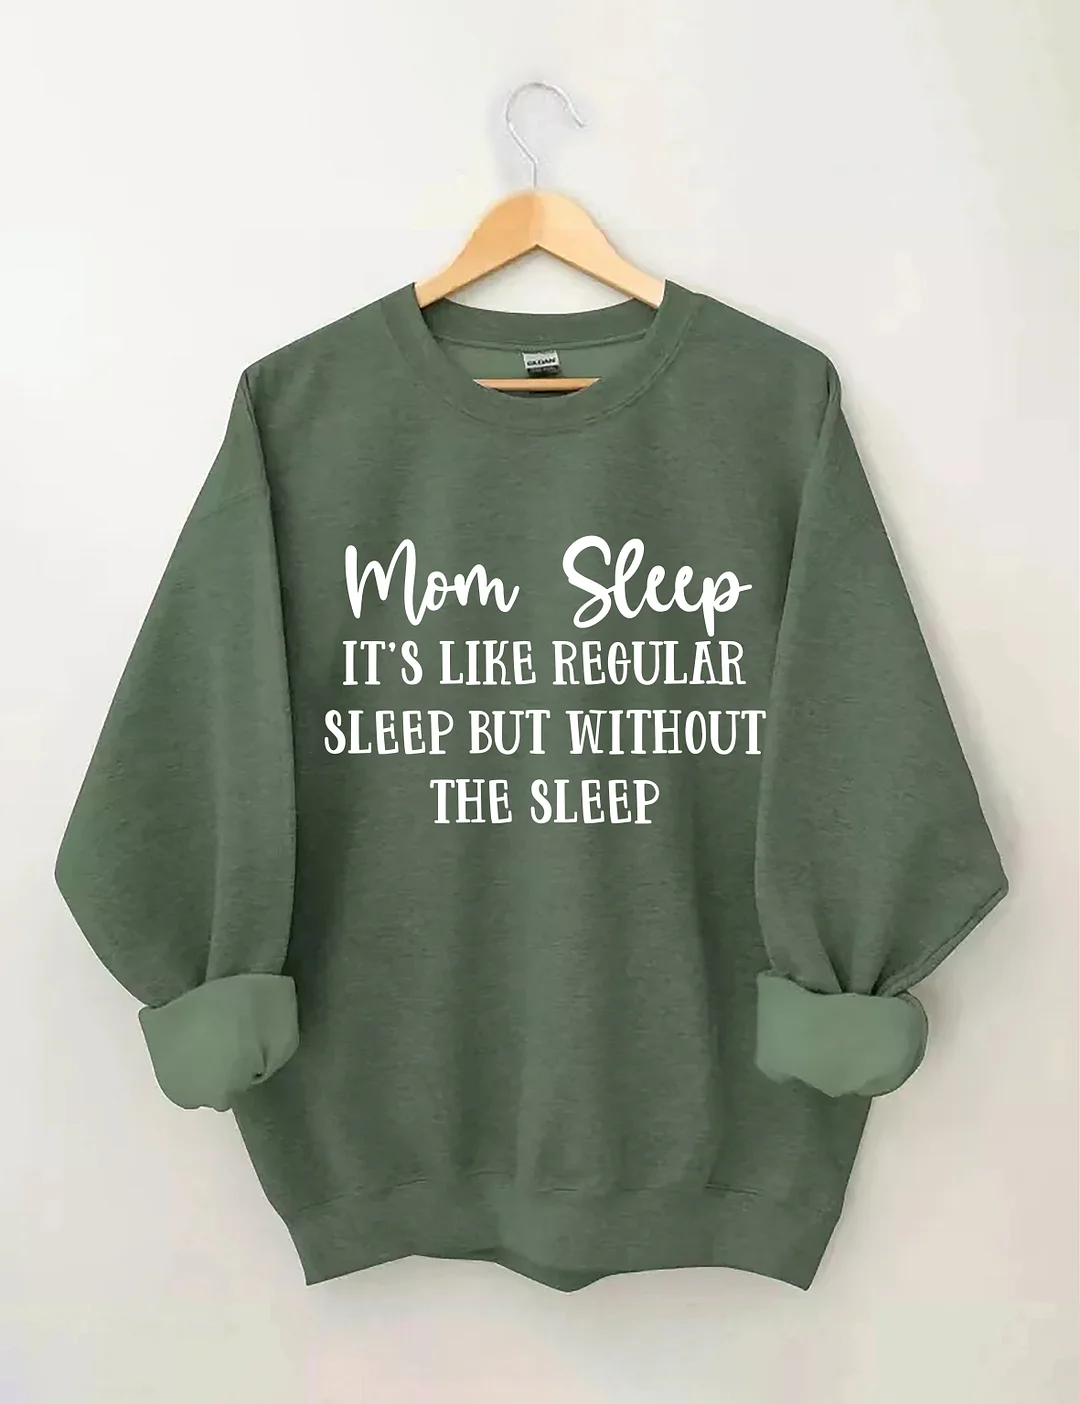 Mom Sleep It's Like Regular Sleep But Without The Sleep Sweatshirt